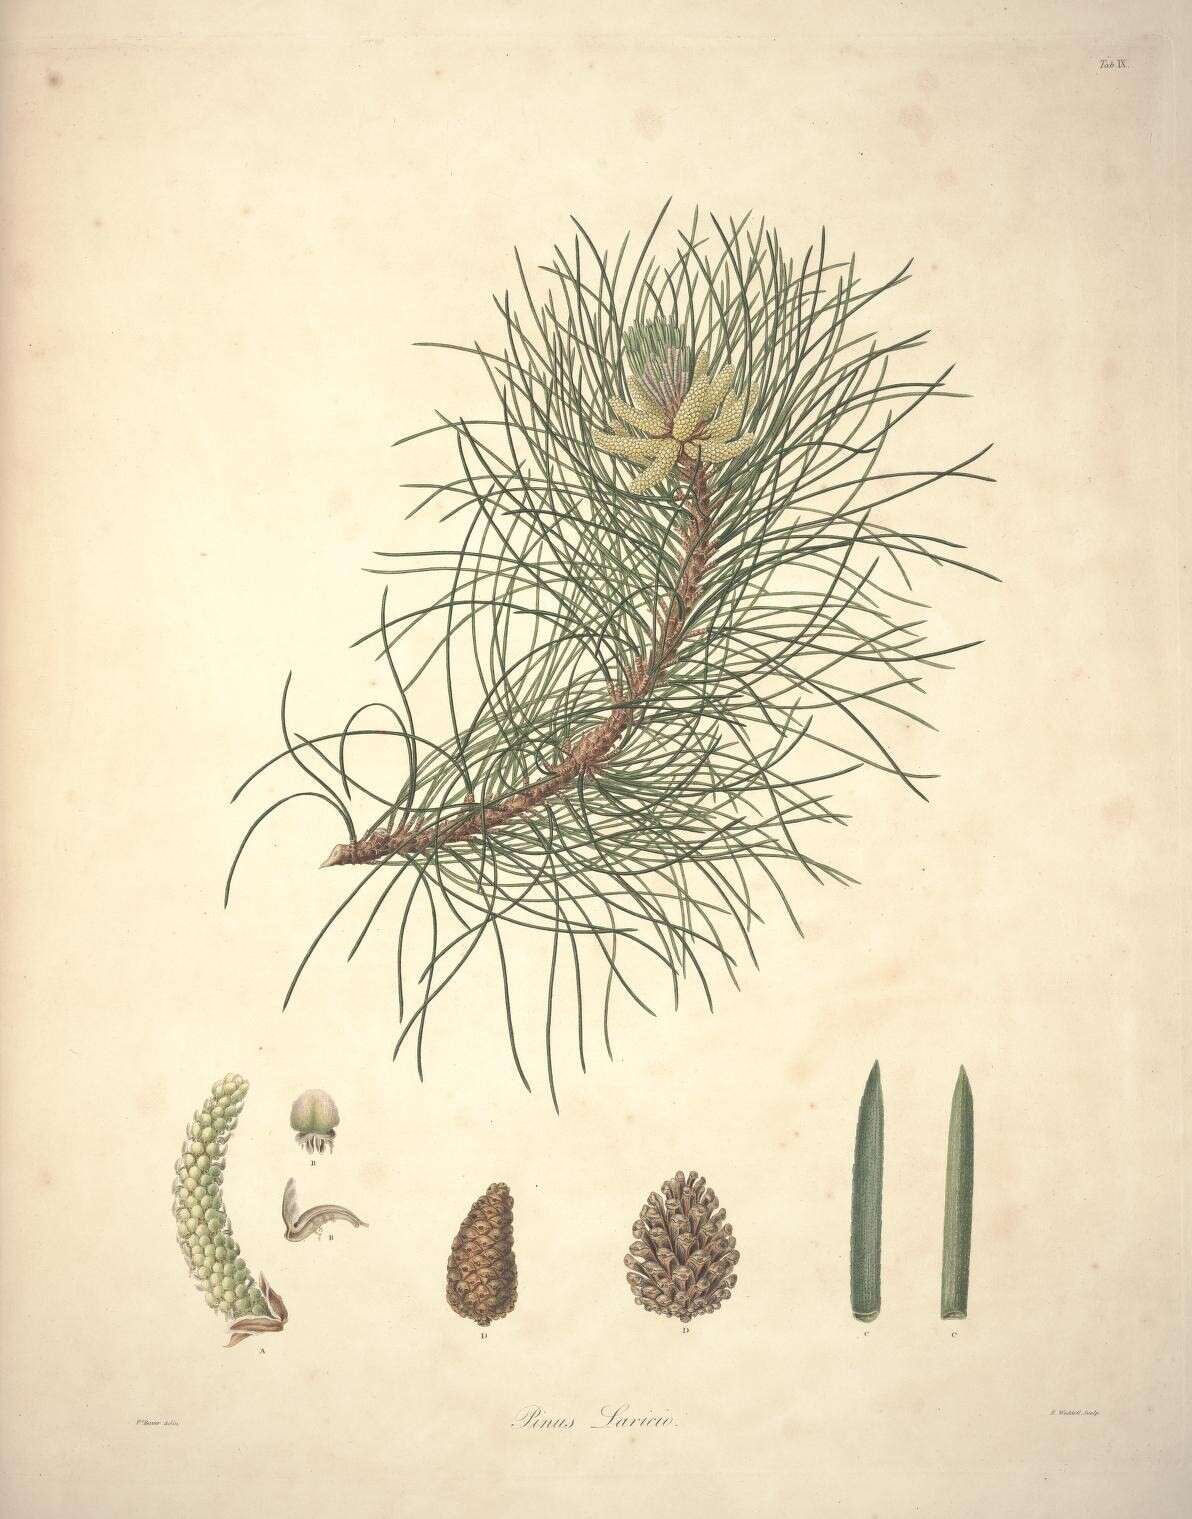 Image of Pinus nigra subsp. laricio (Poir.) Maire